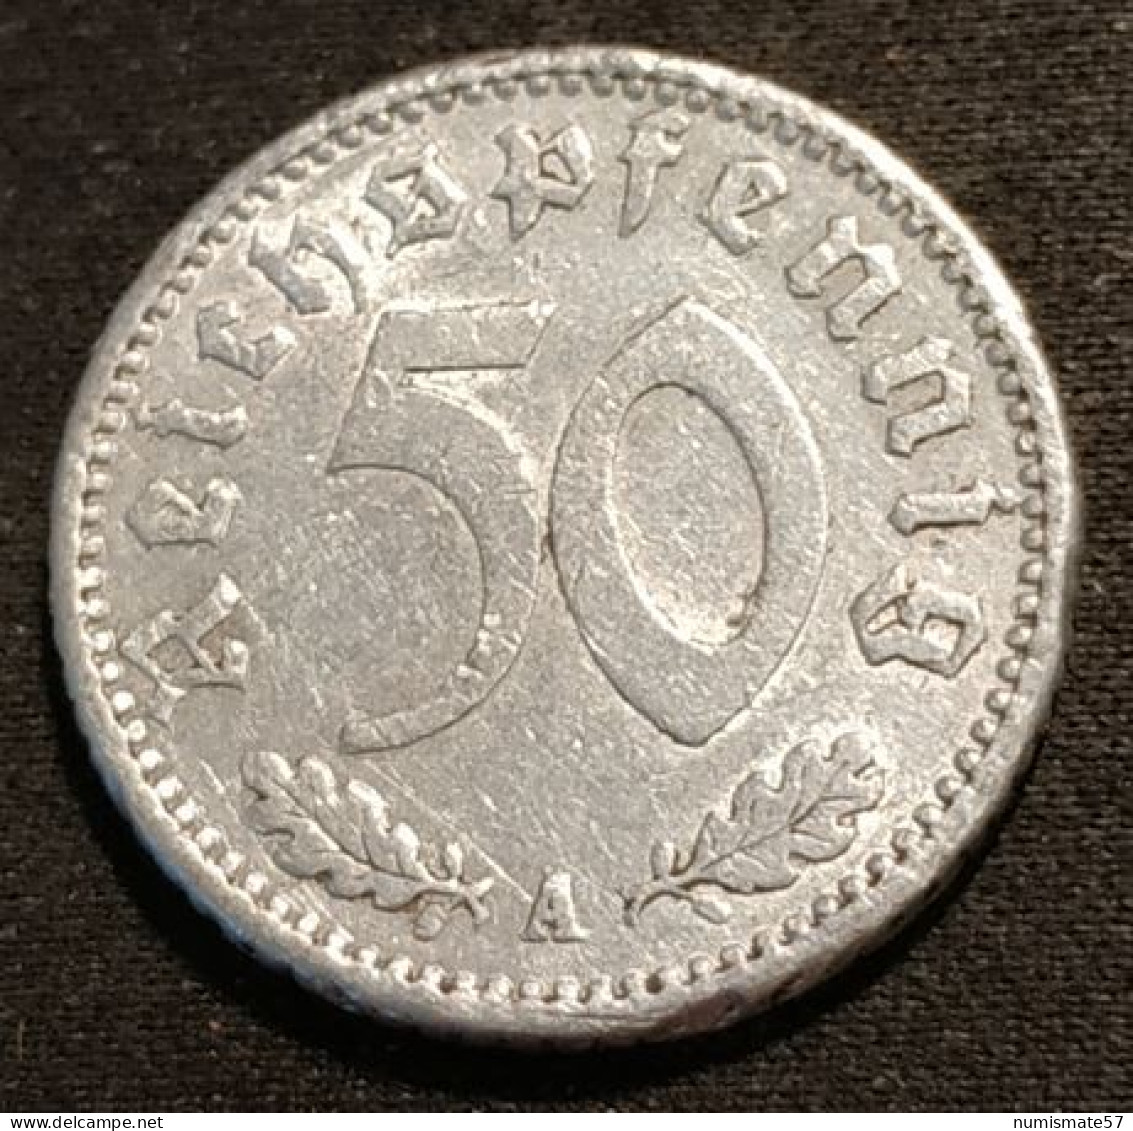 ALLEMAGNE - GERMANY - 50 Reichspfennig ( Pfennig ) 1943 D - Deutsches Reich - KM 96 - 50 Reichspfennig